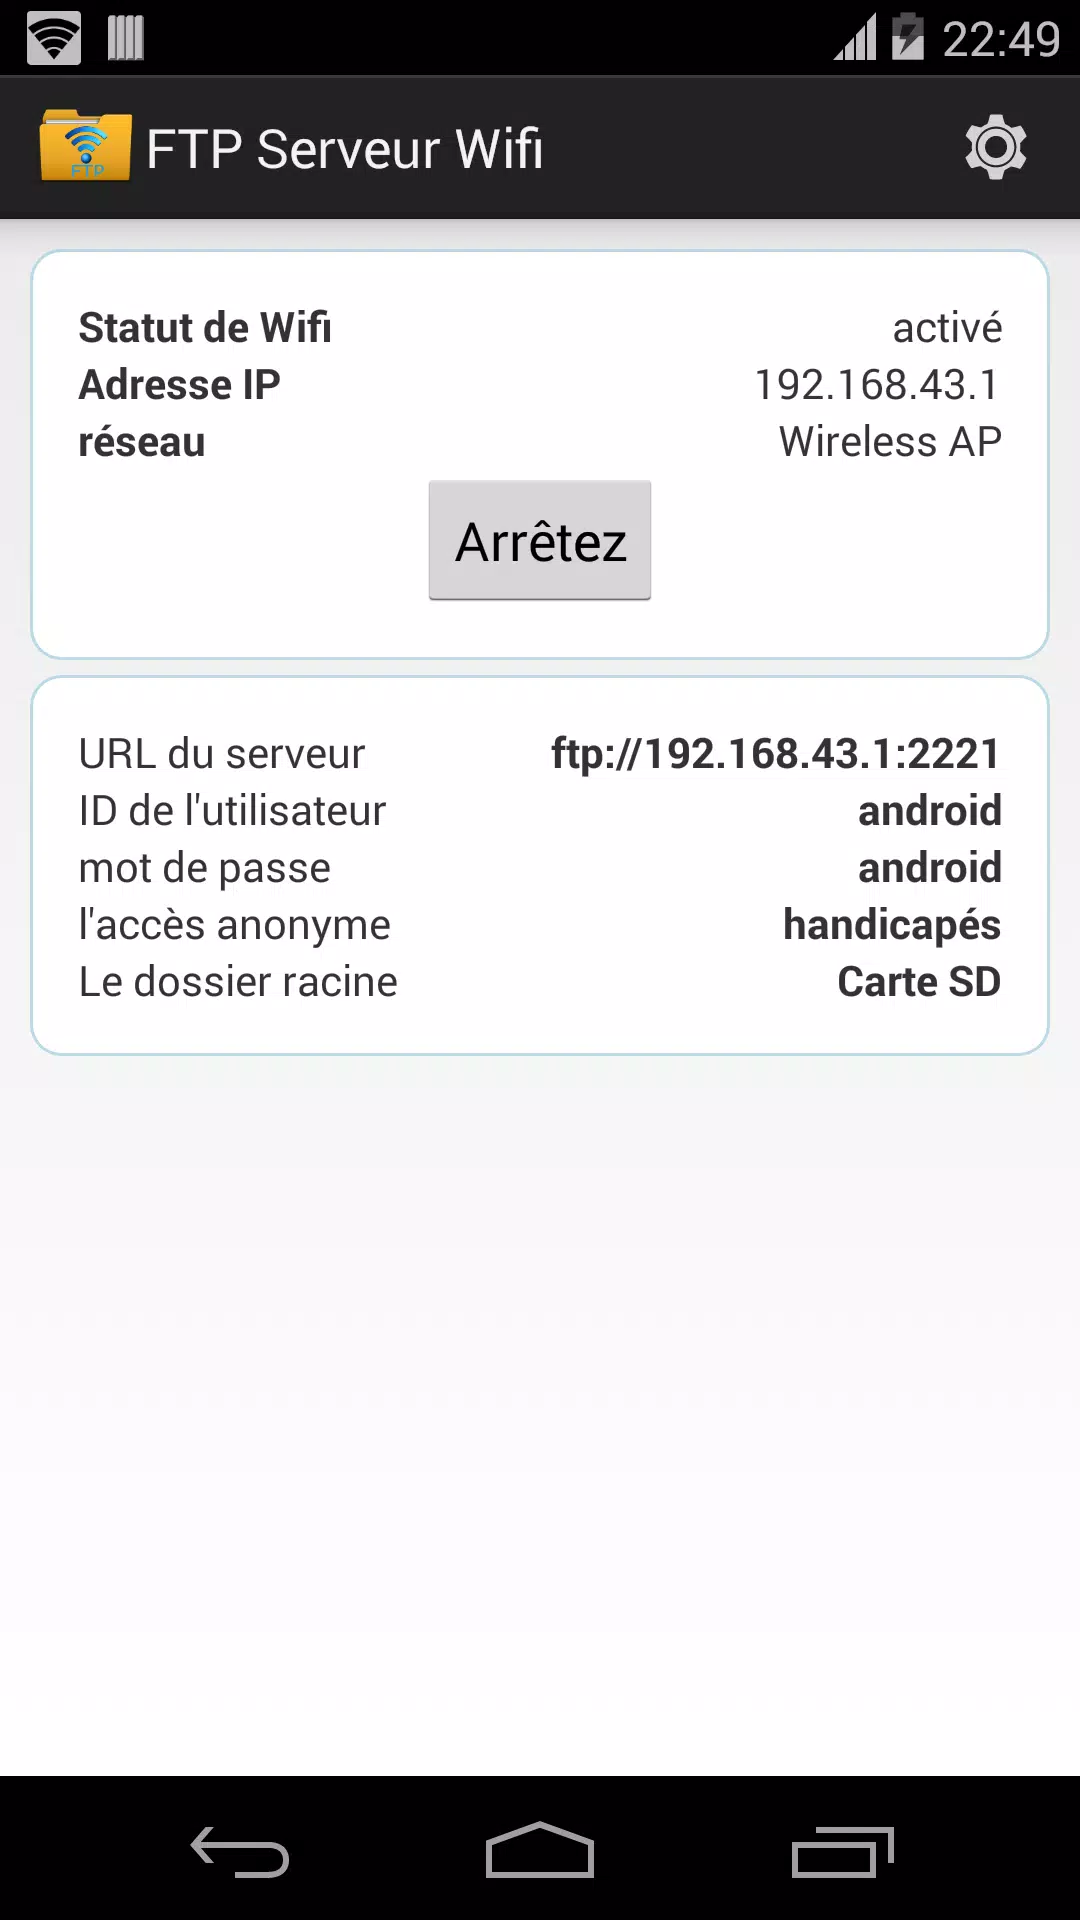 FTP Serveur WiFi APK pour Android Télécharger